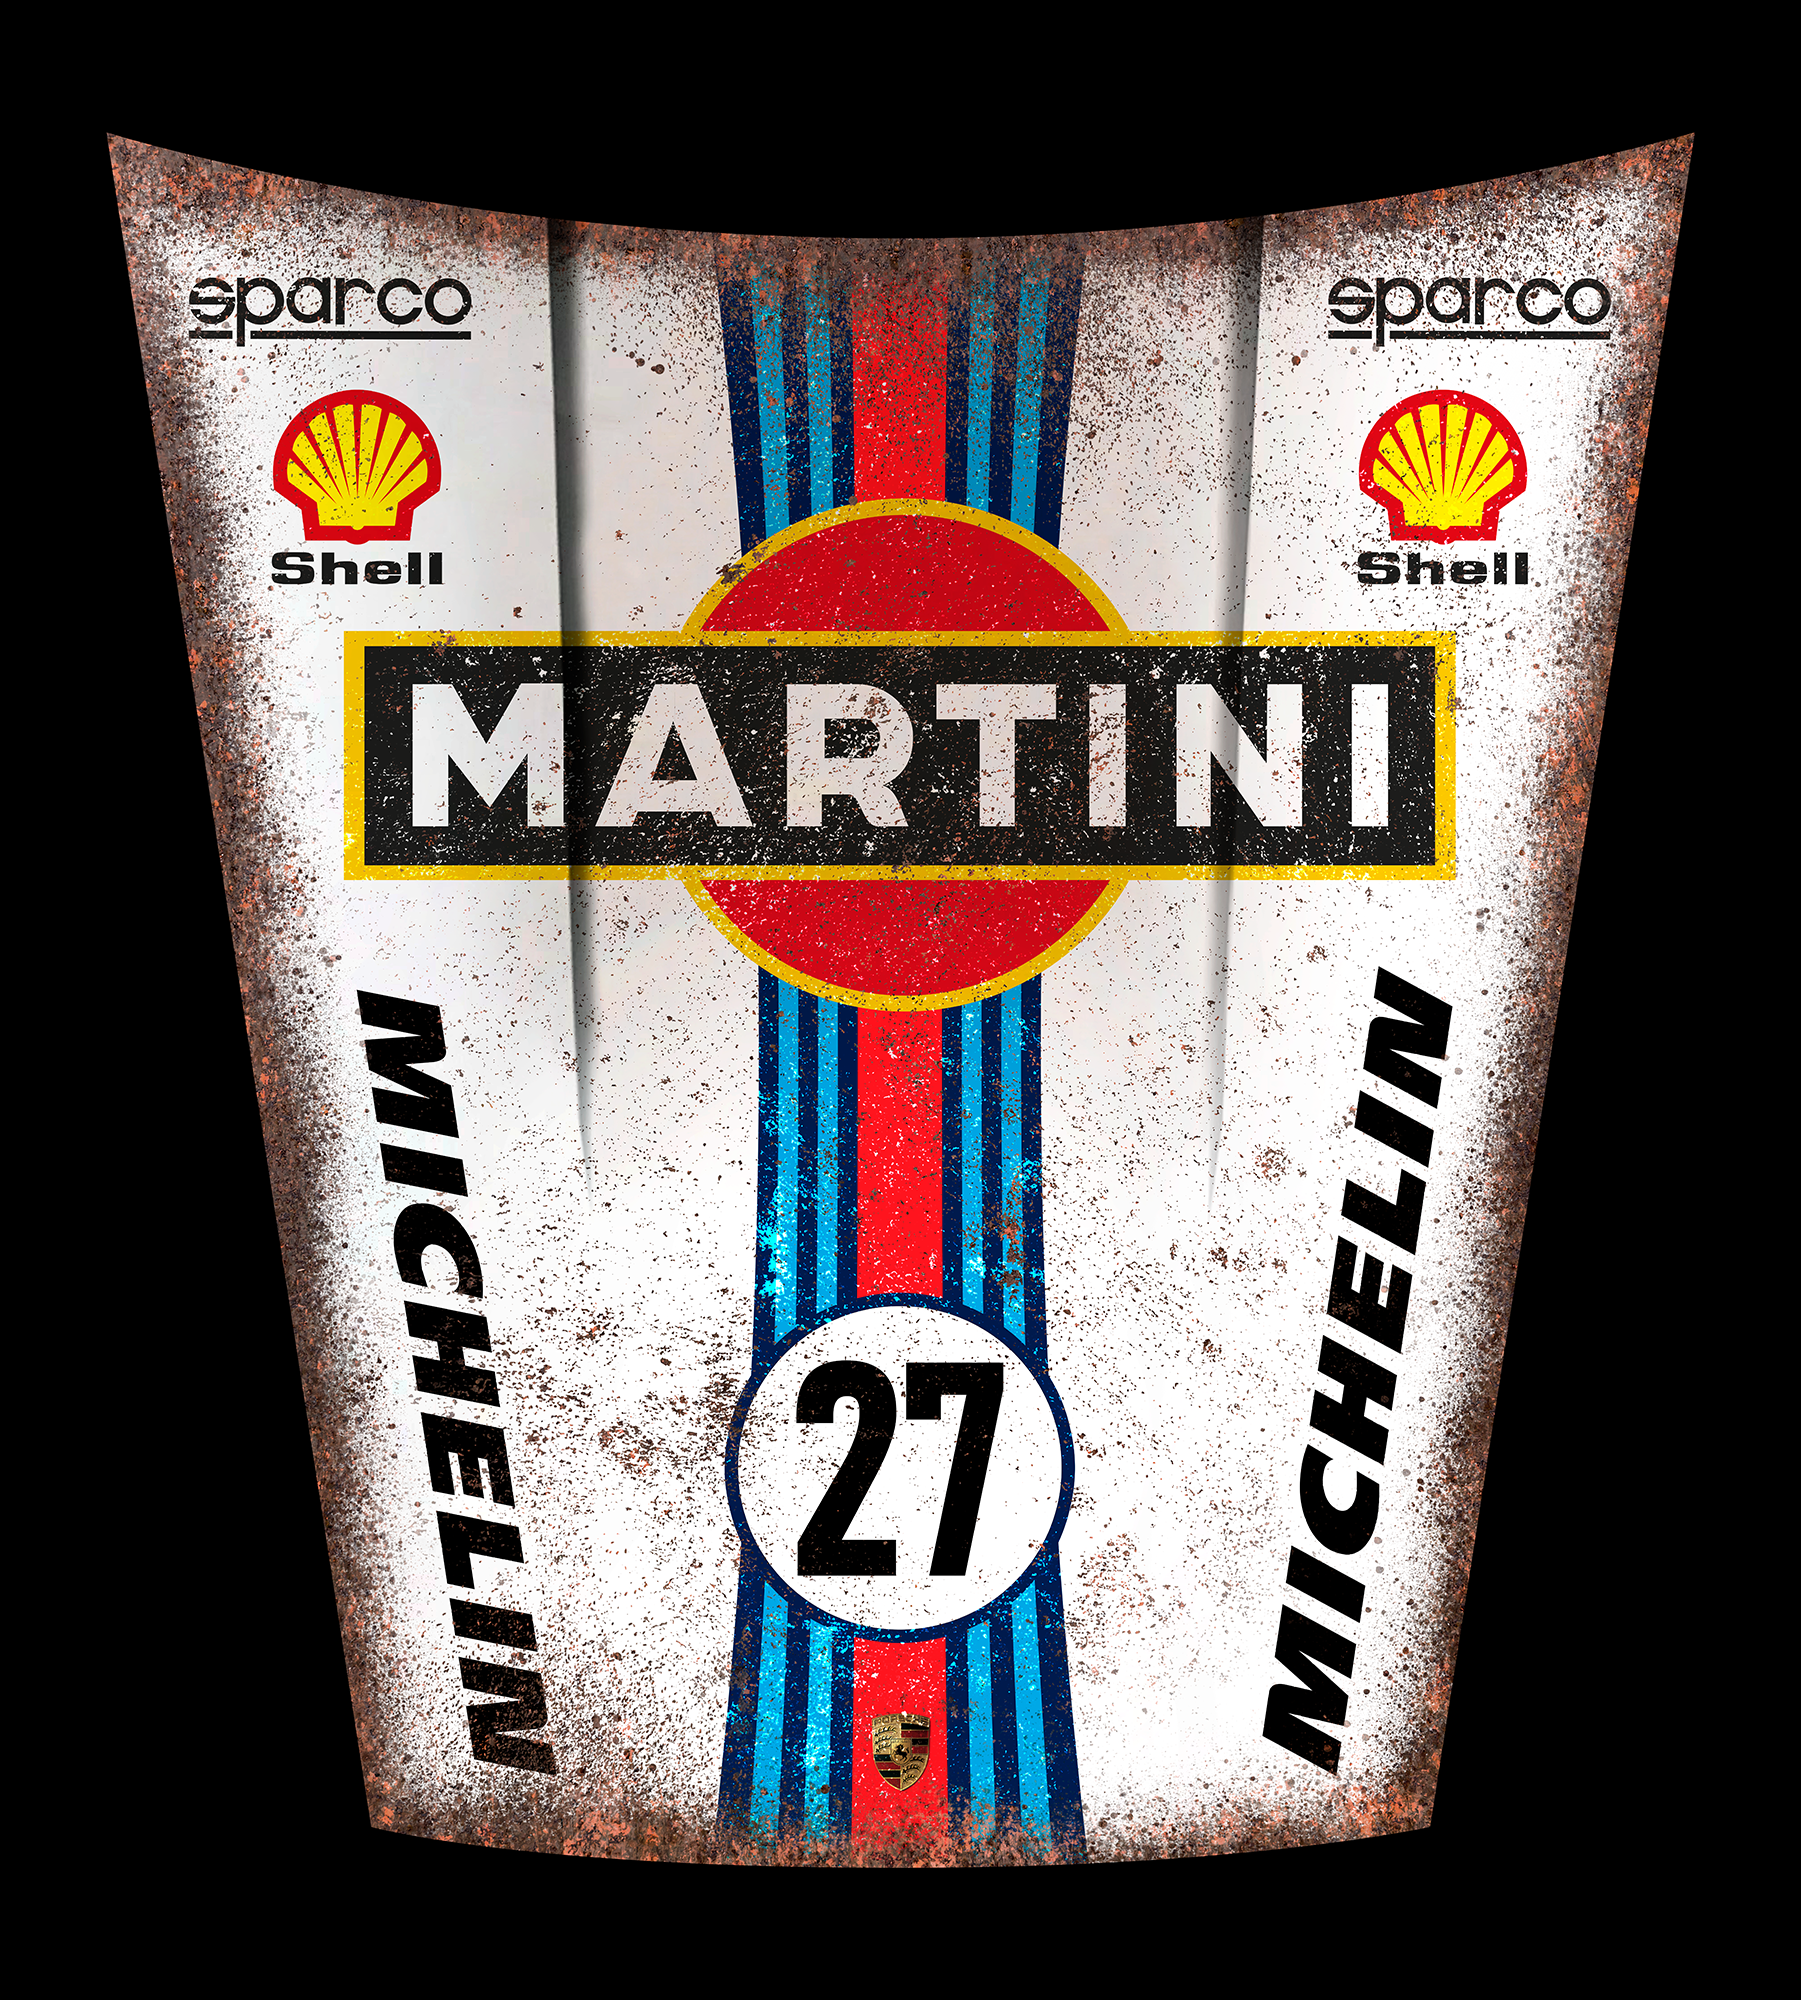 martini 27